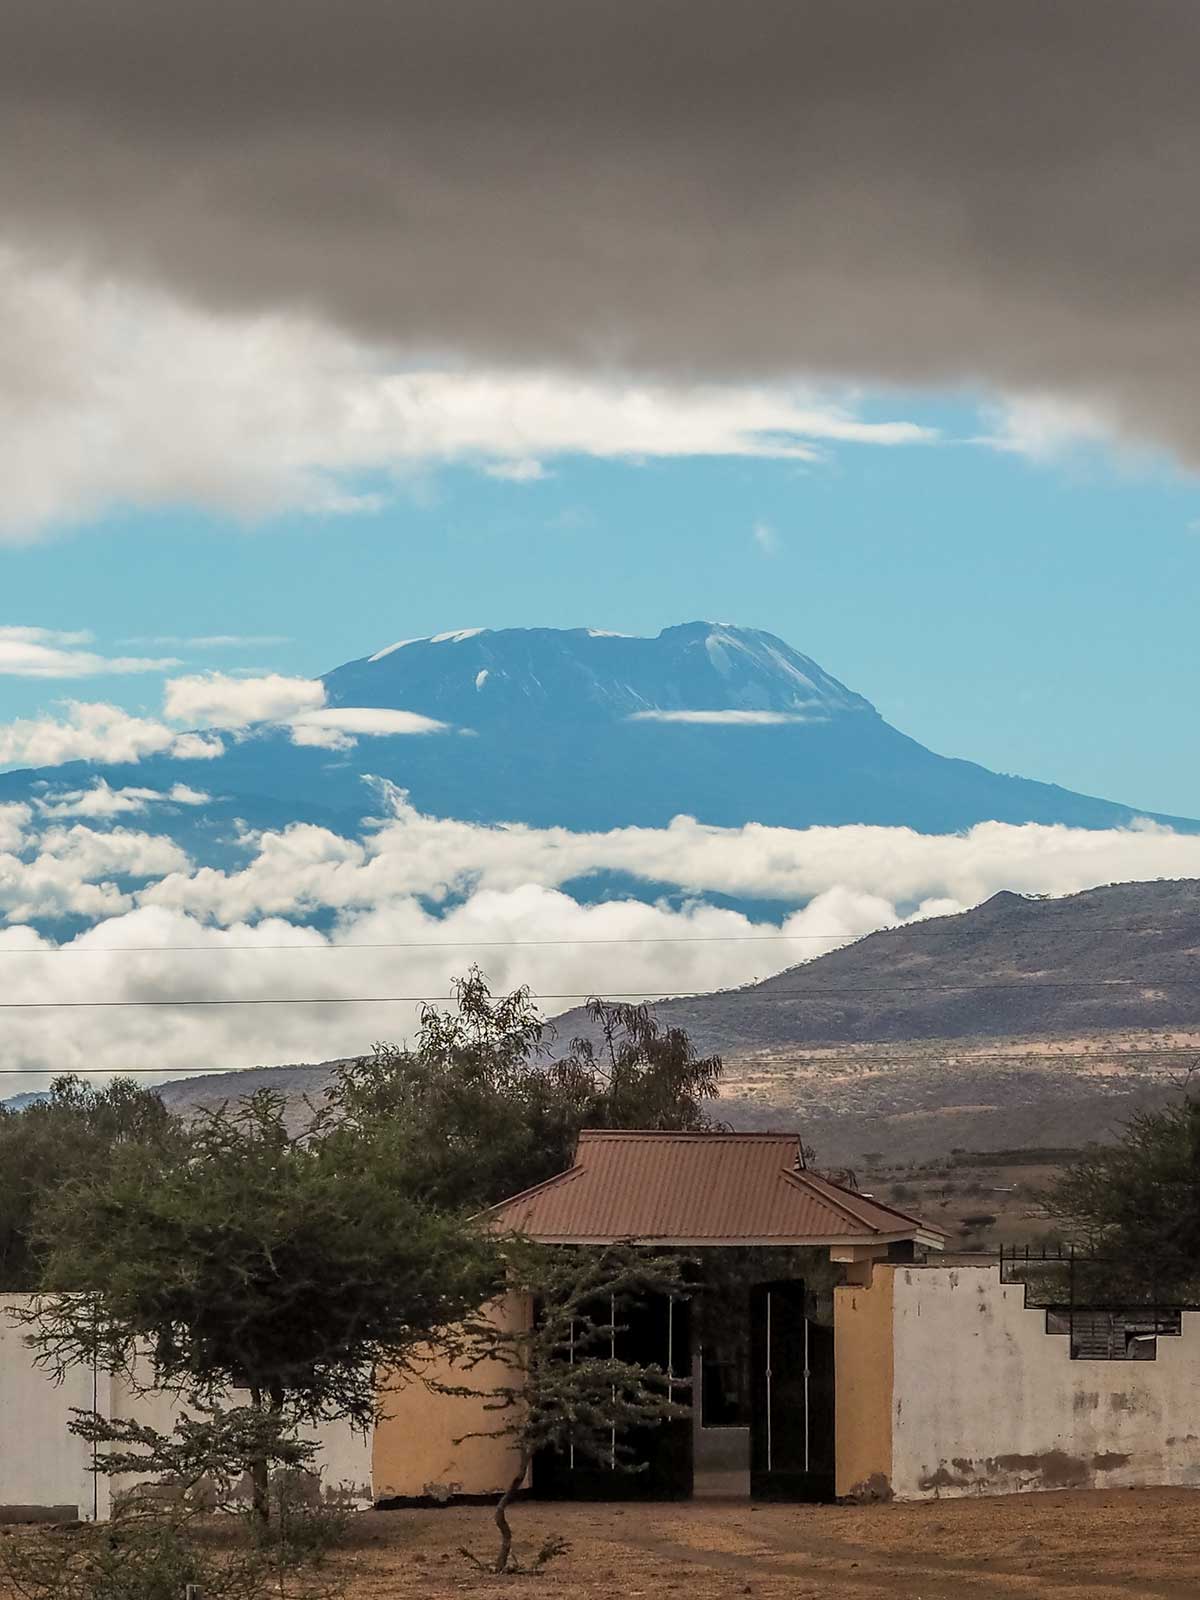 Mount Kilimanjaro from the road through Tanzania